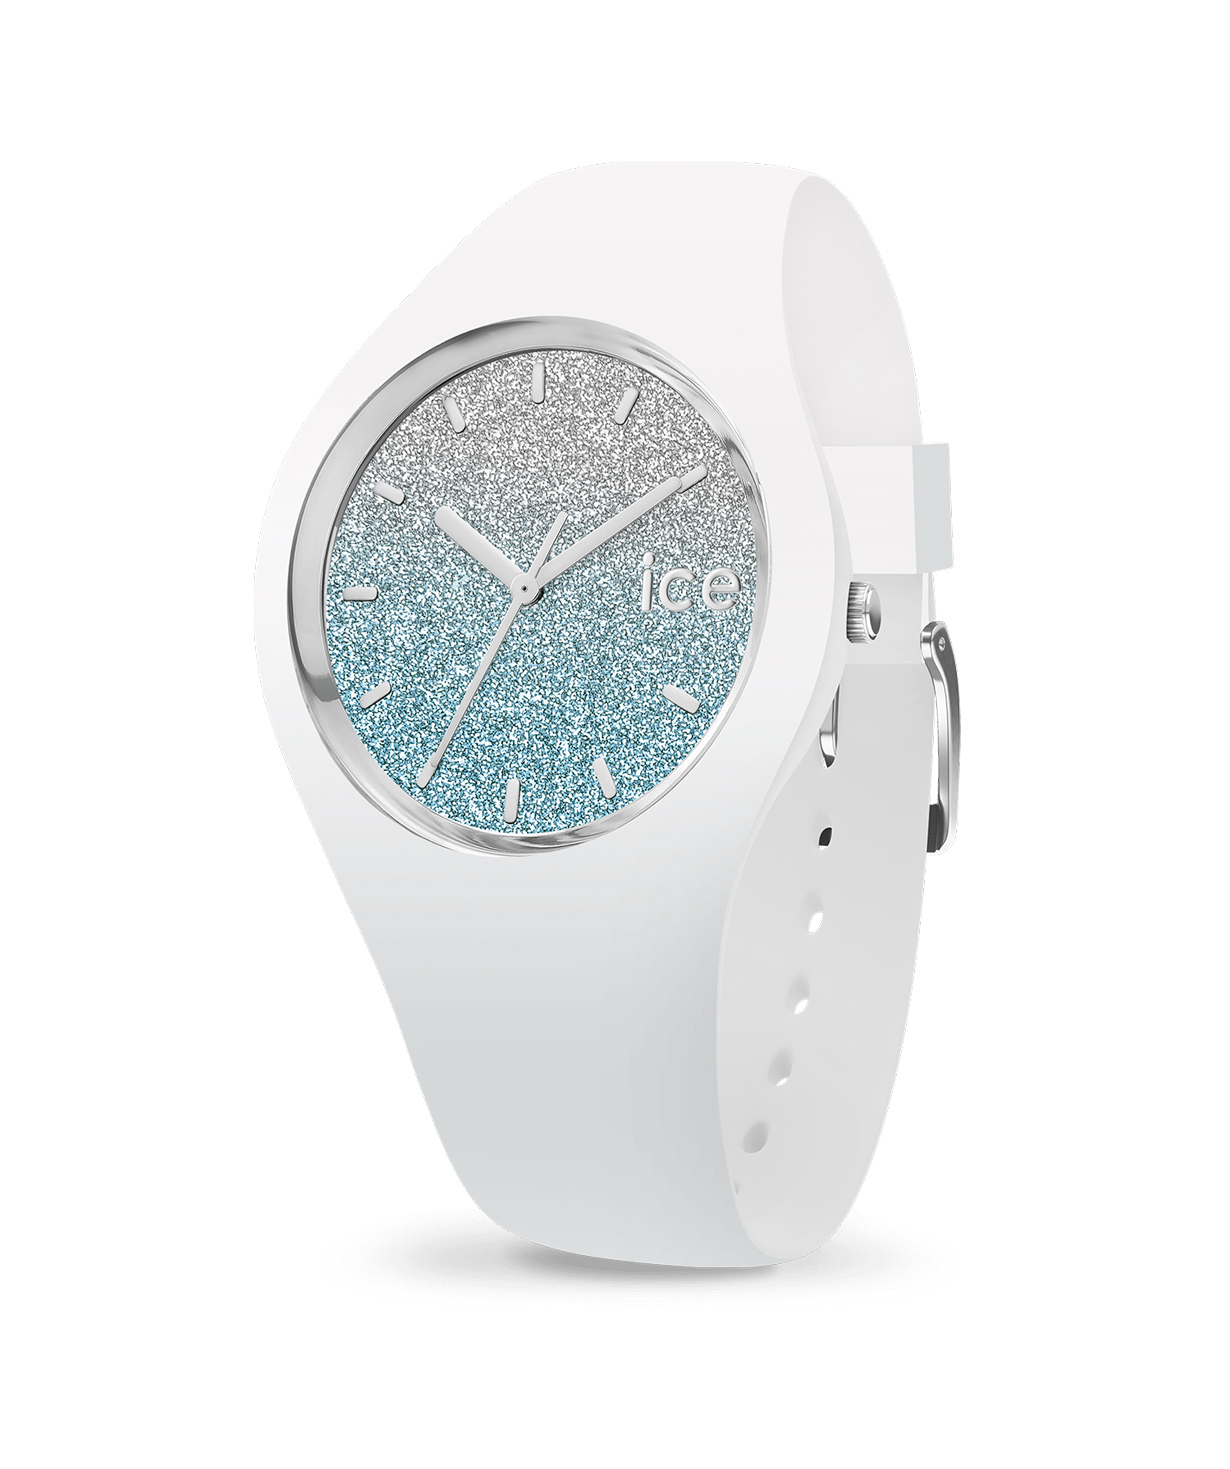 Ժամացույց «Ice-Watch» ICE lo - White blue